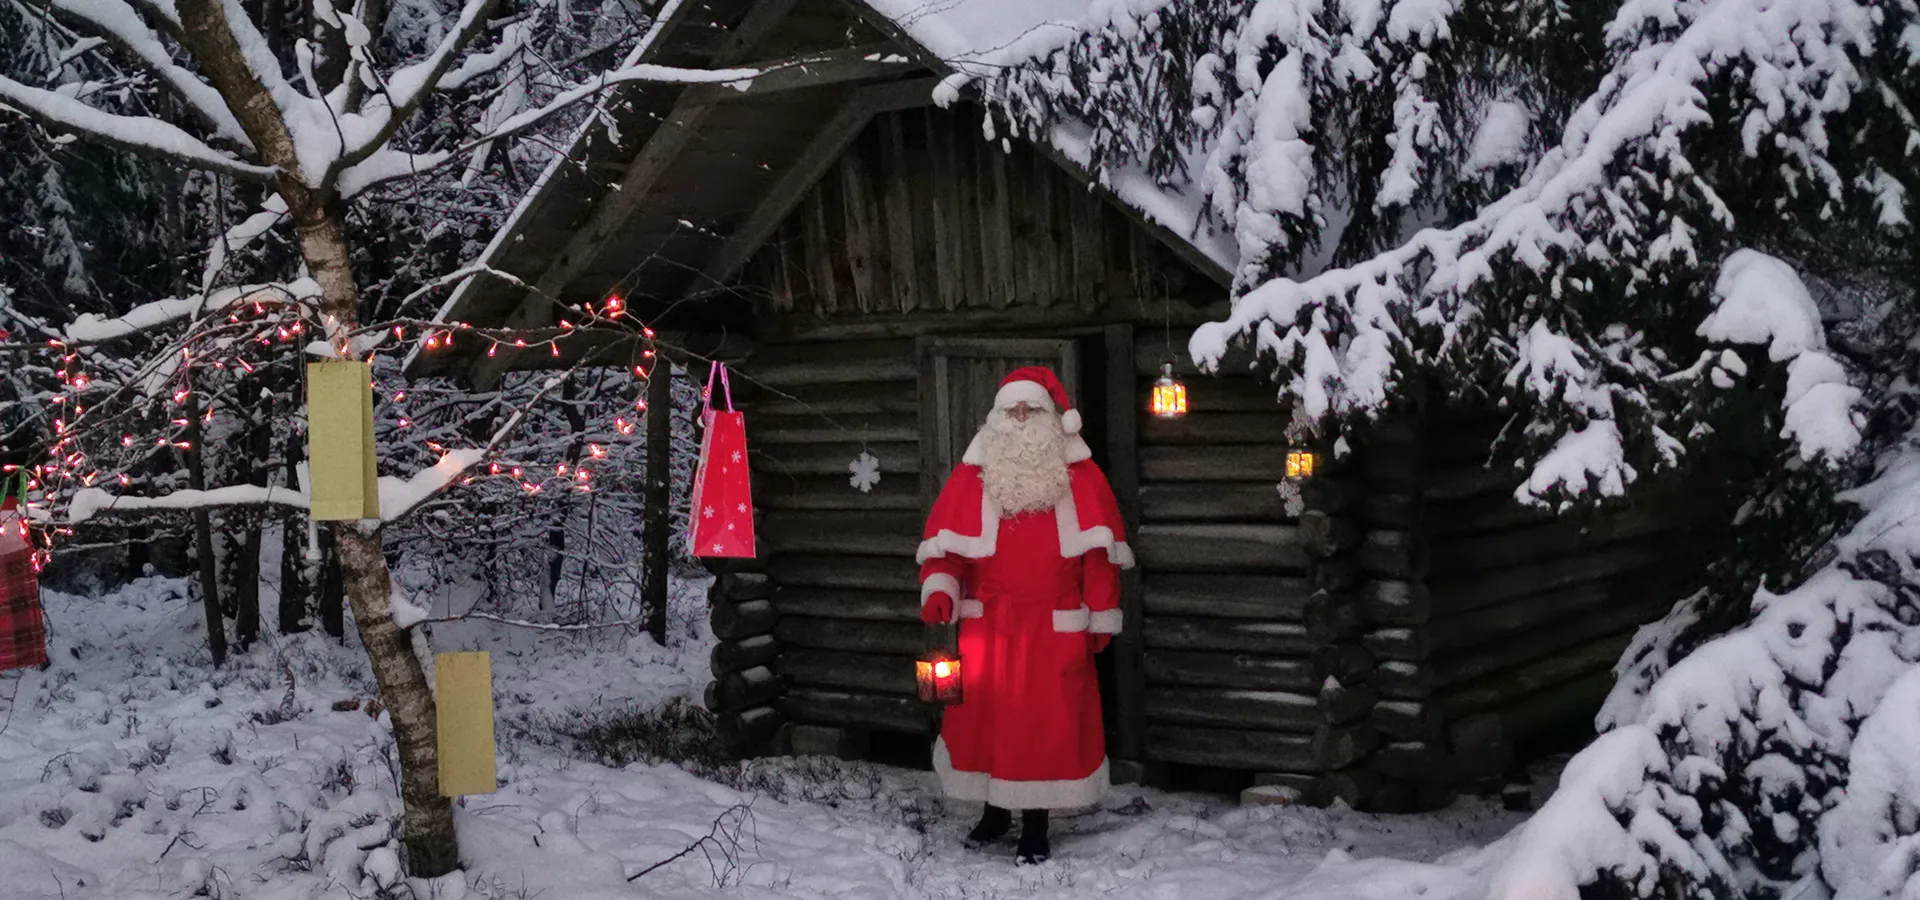 Weihnachtsmann vor einer Holzhütte im verschneiten Wald mit Lichterketten.